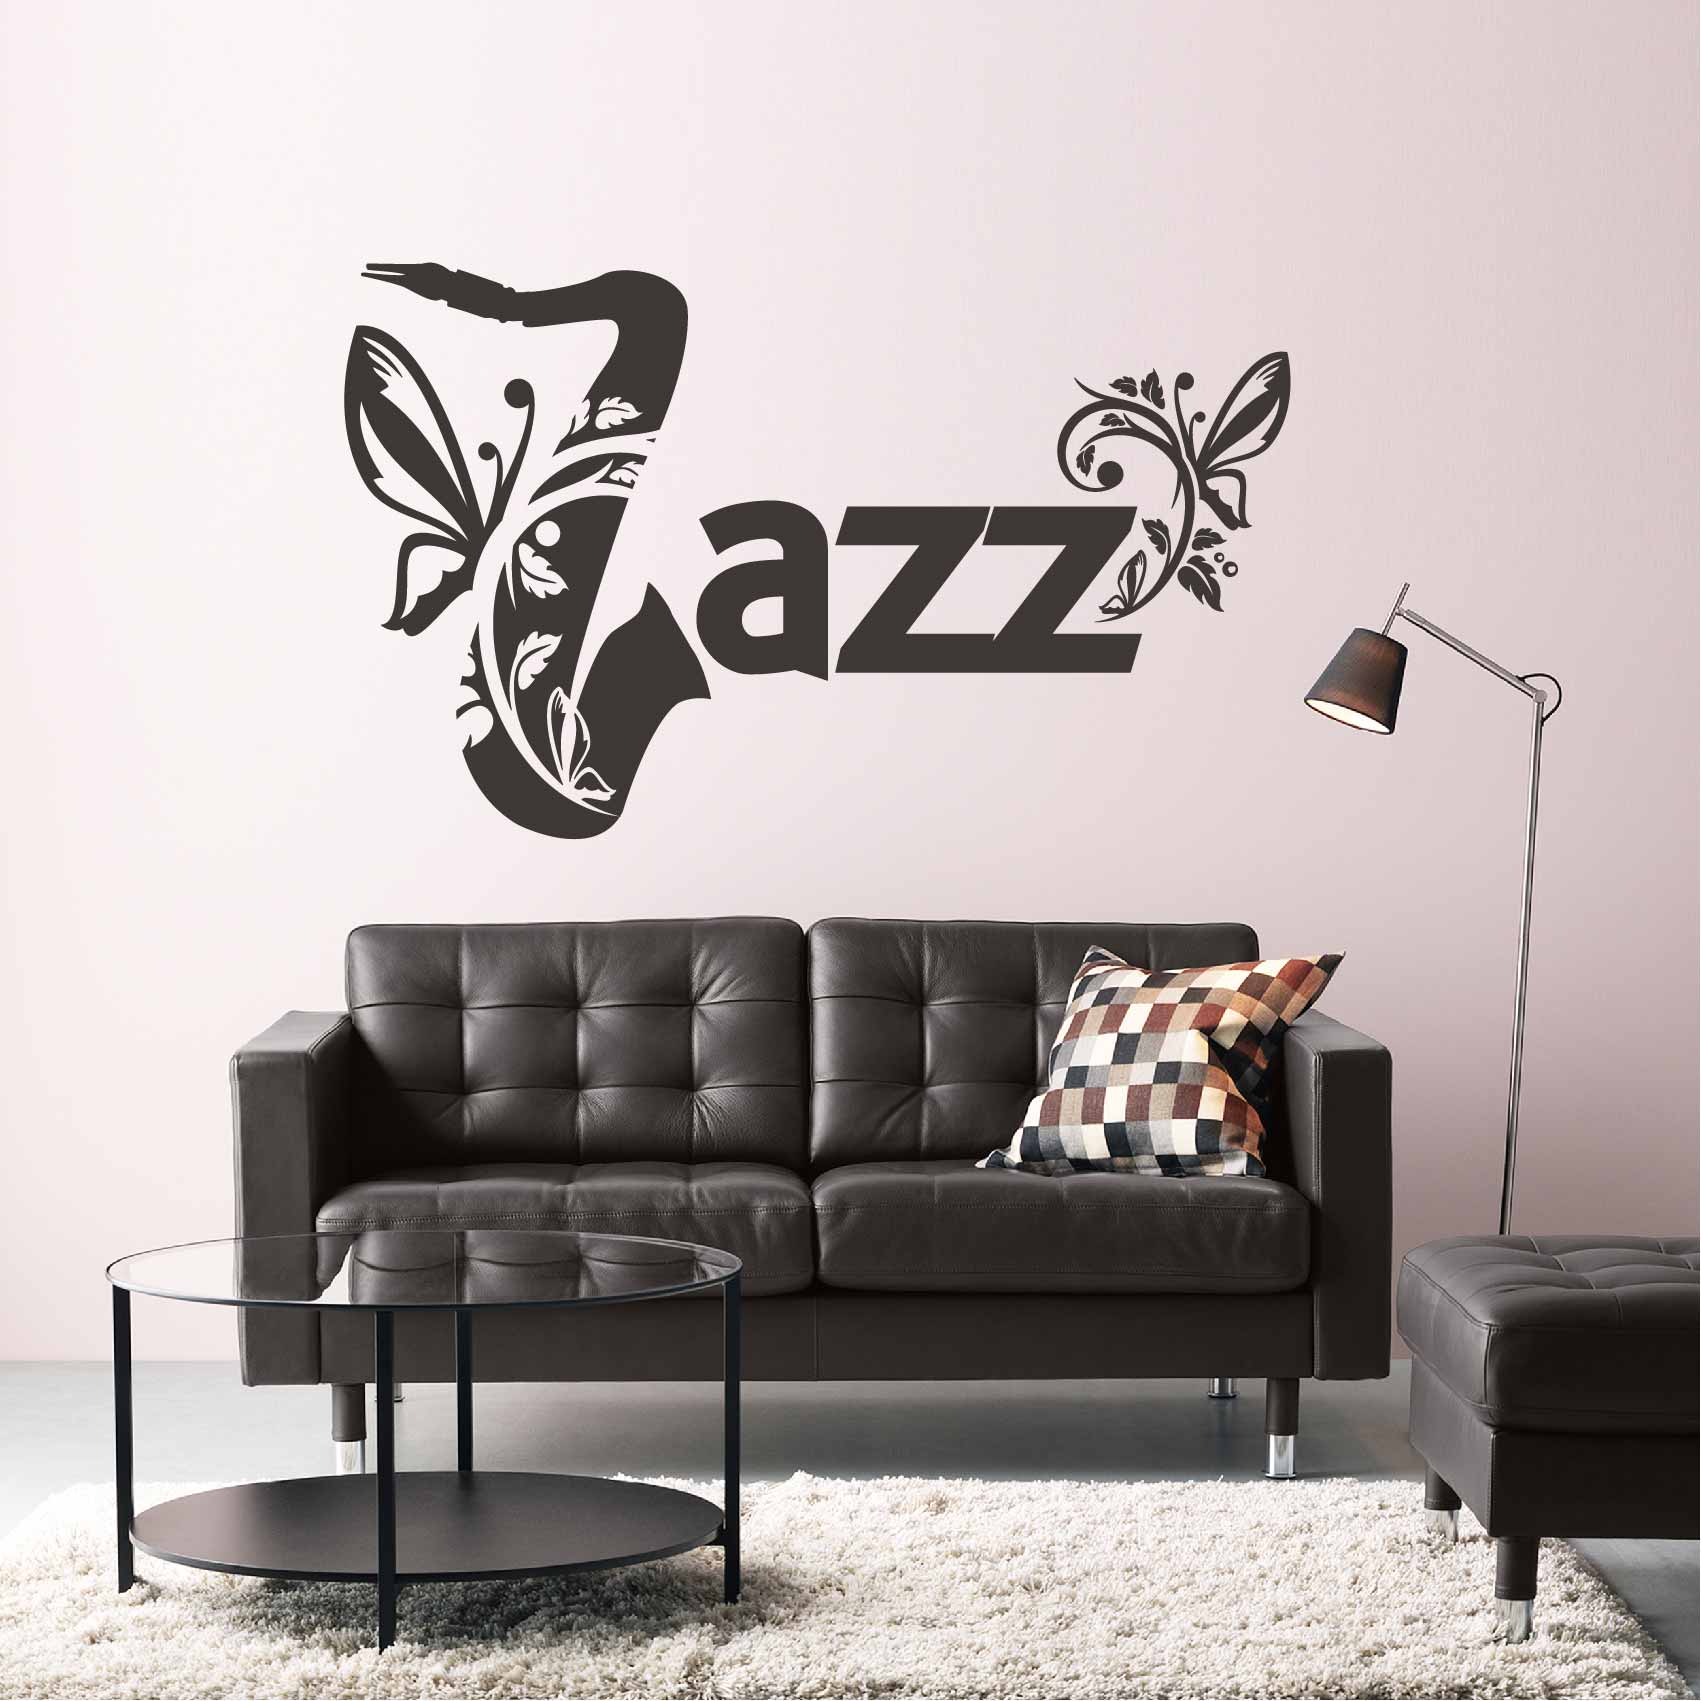 stickers-jazz-ref50musique-autocollant-muraux-musique-sticker-mural-musical-note-notes-deco-salon-chambre-adulte-ado-enfant